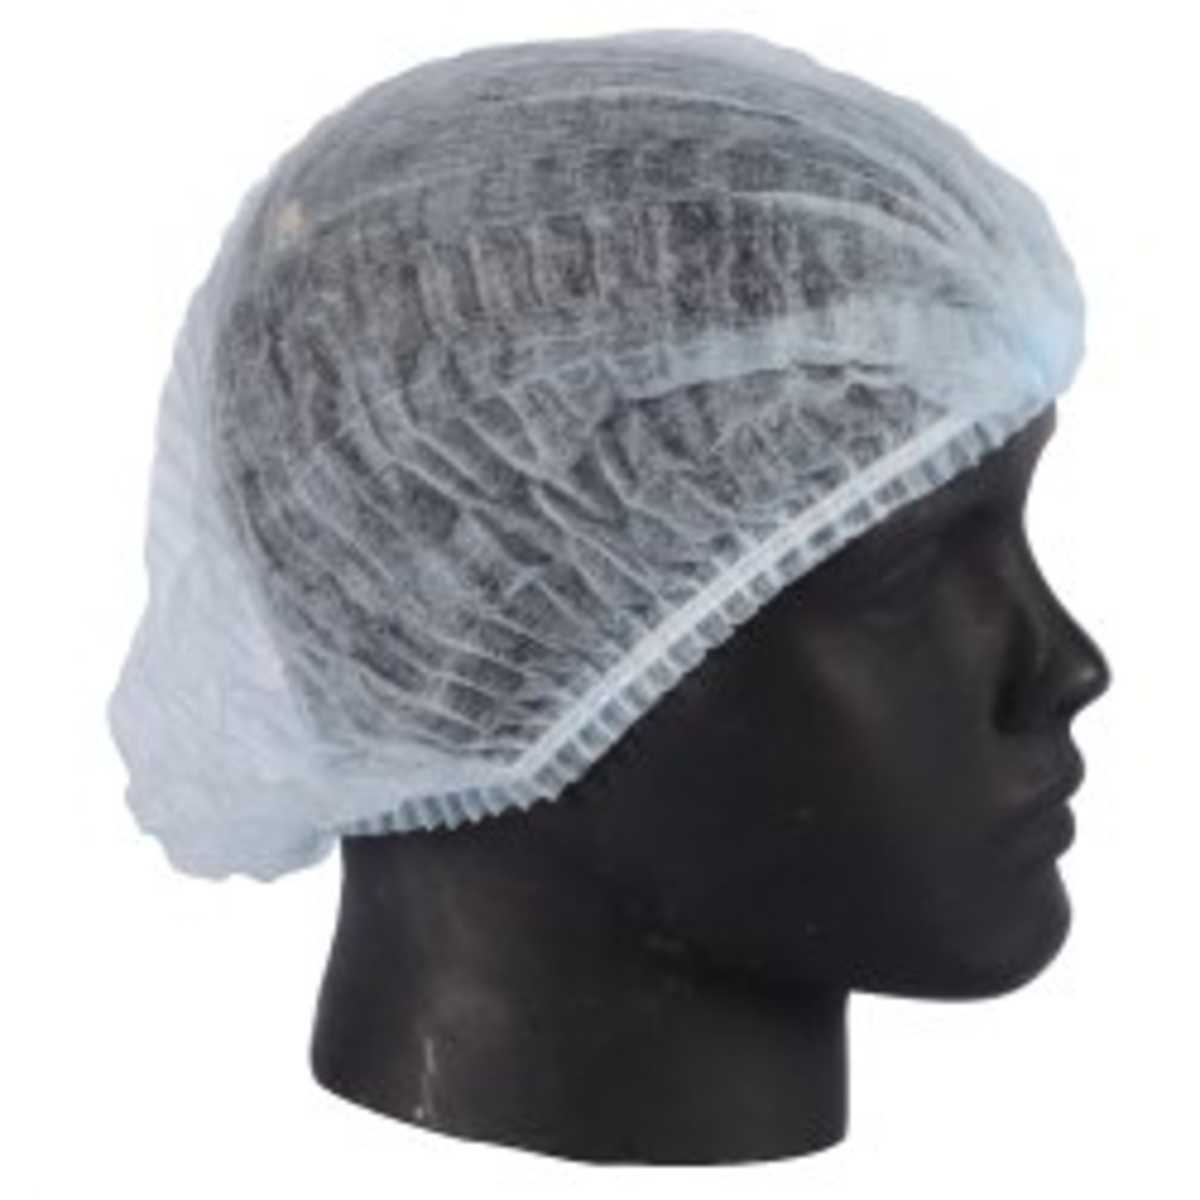 Disposable Non-Woven Cap (Hair Net)